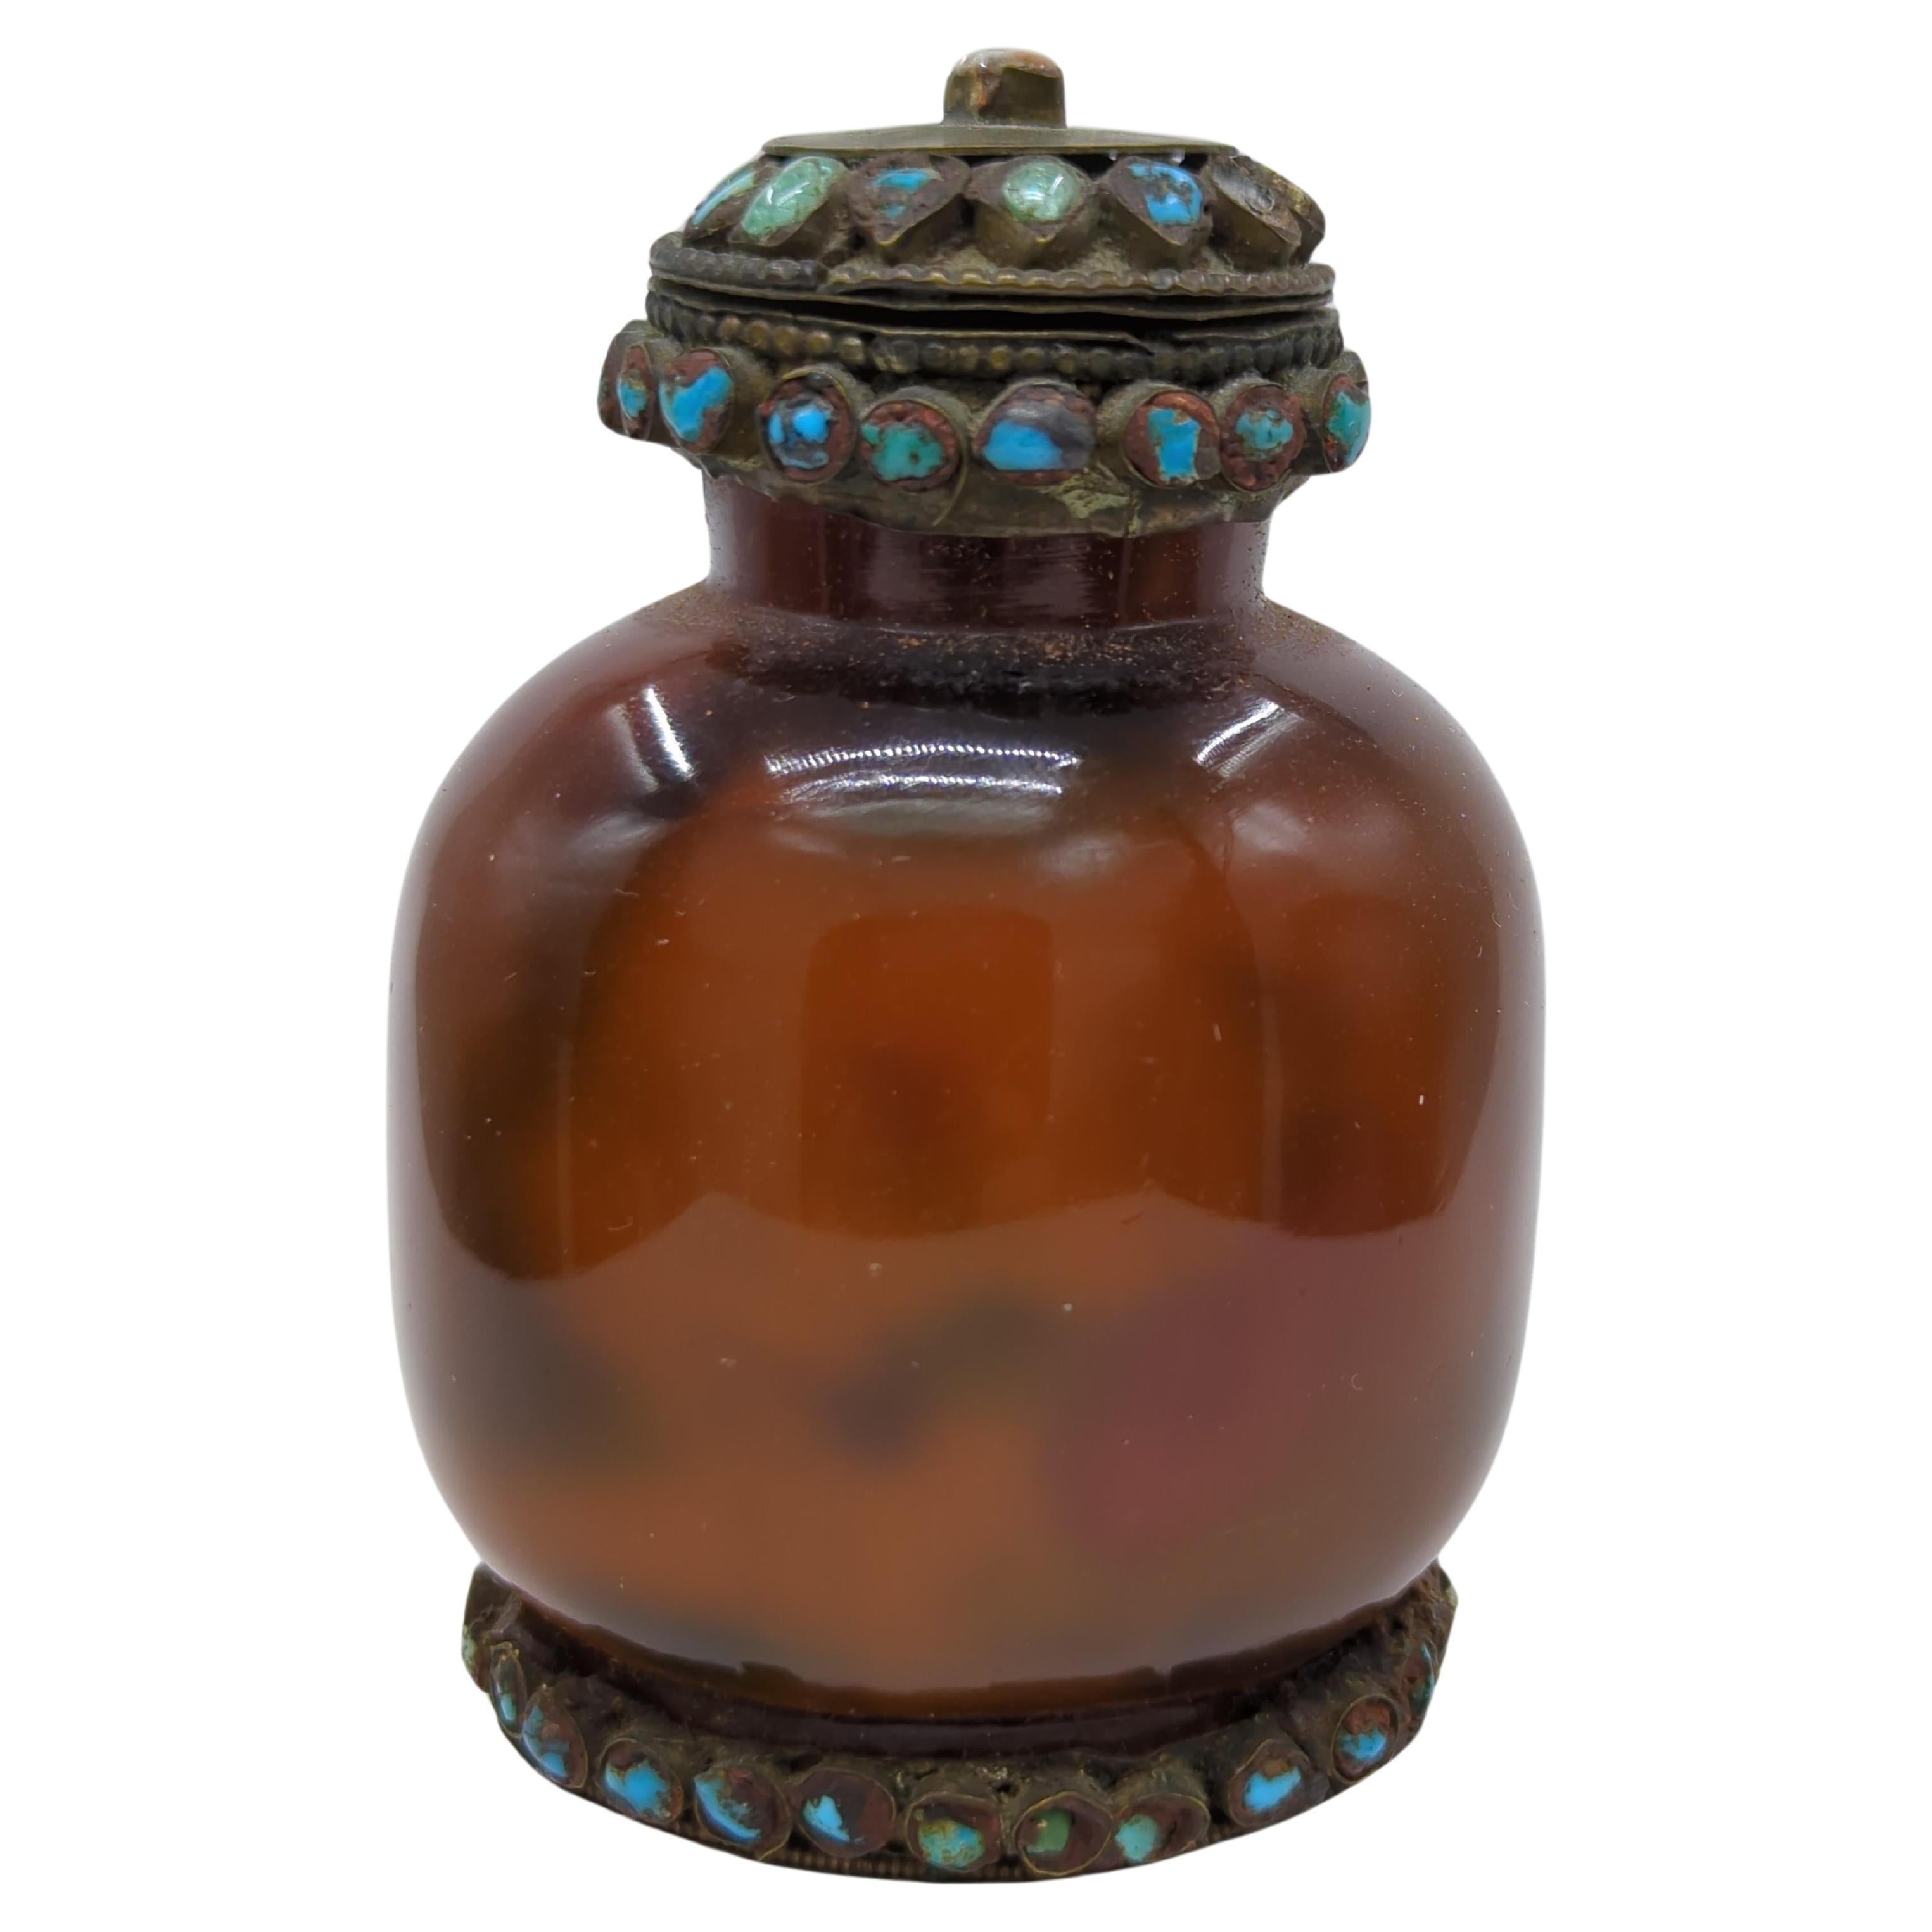 Une ancienne bouteille de tabac à priser chinoise de la fin de la période Qing, fabriquée en verre ambré, illustre l'art mystérieux et complexe de la peinture intérieure. Ce flacon présente une scène continue, délicatement rendue, de garçons enjoués